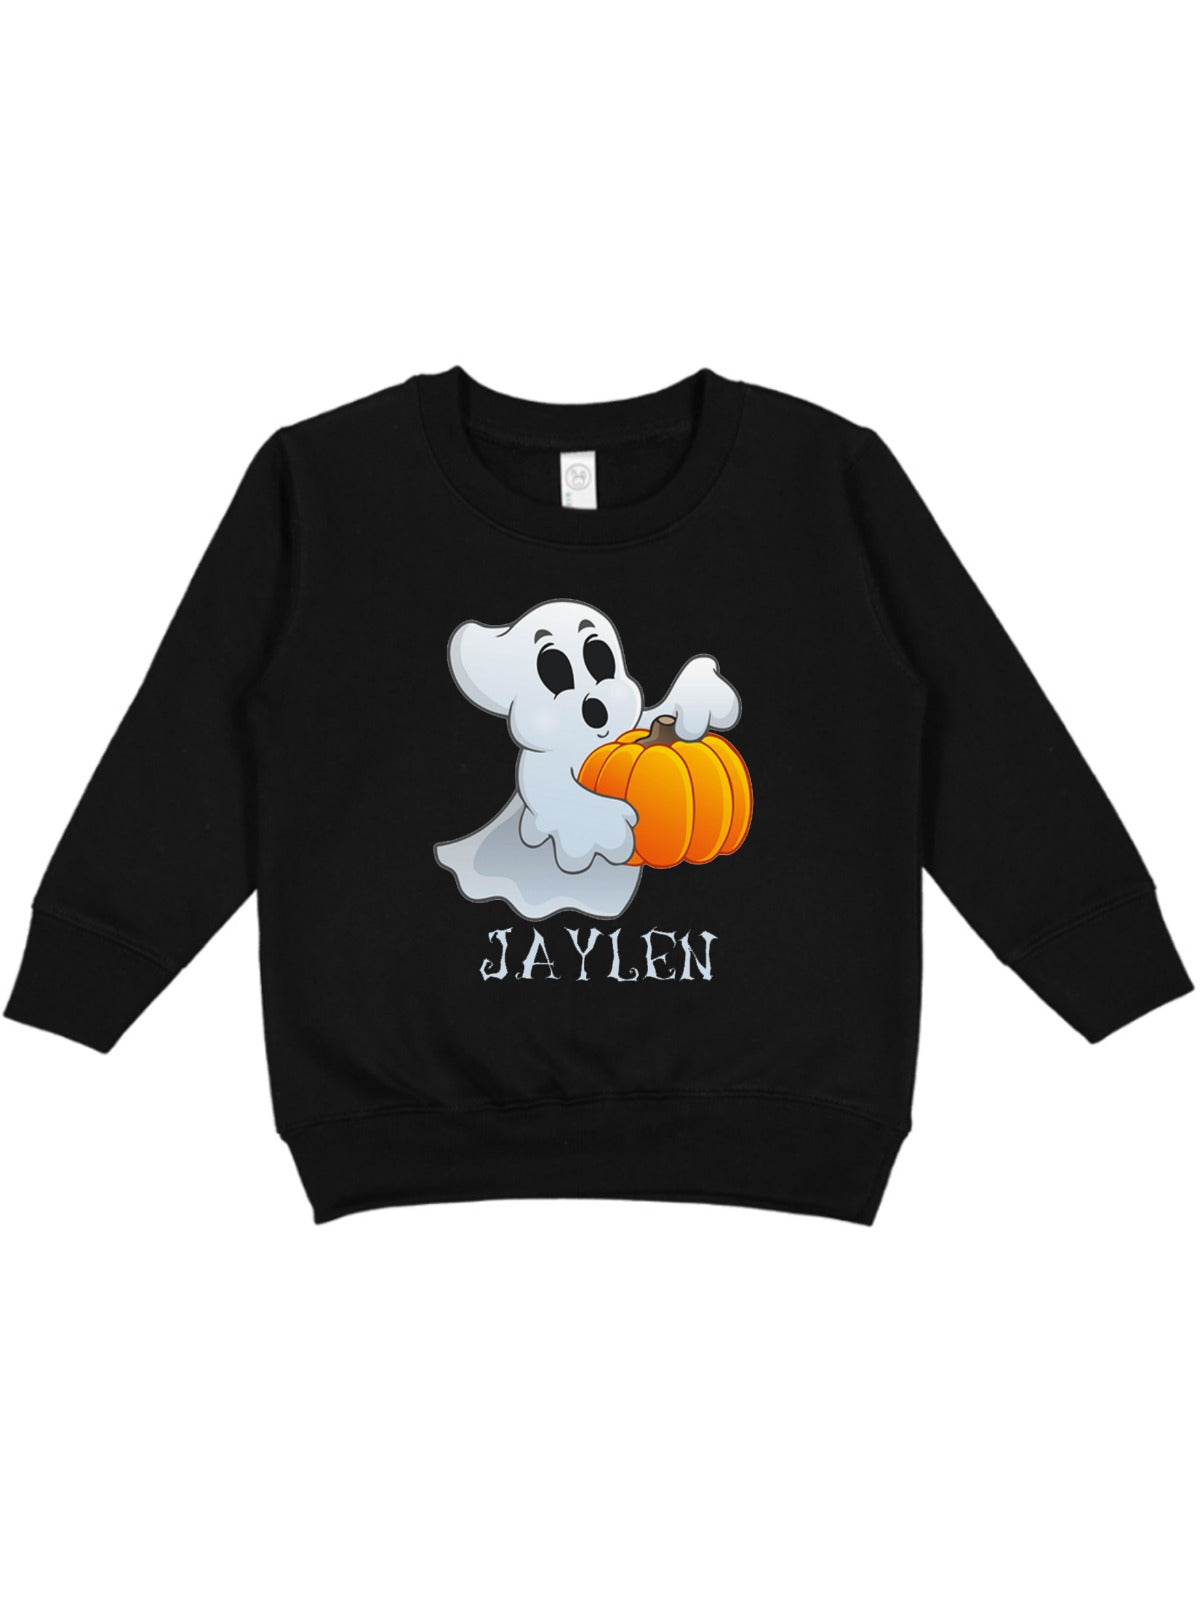 spooky ghost personalized kids unisex Halloween sweatshirt